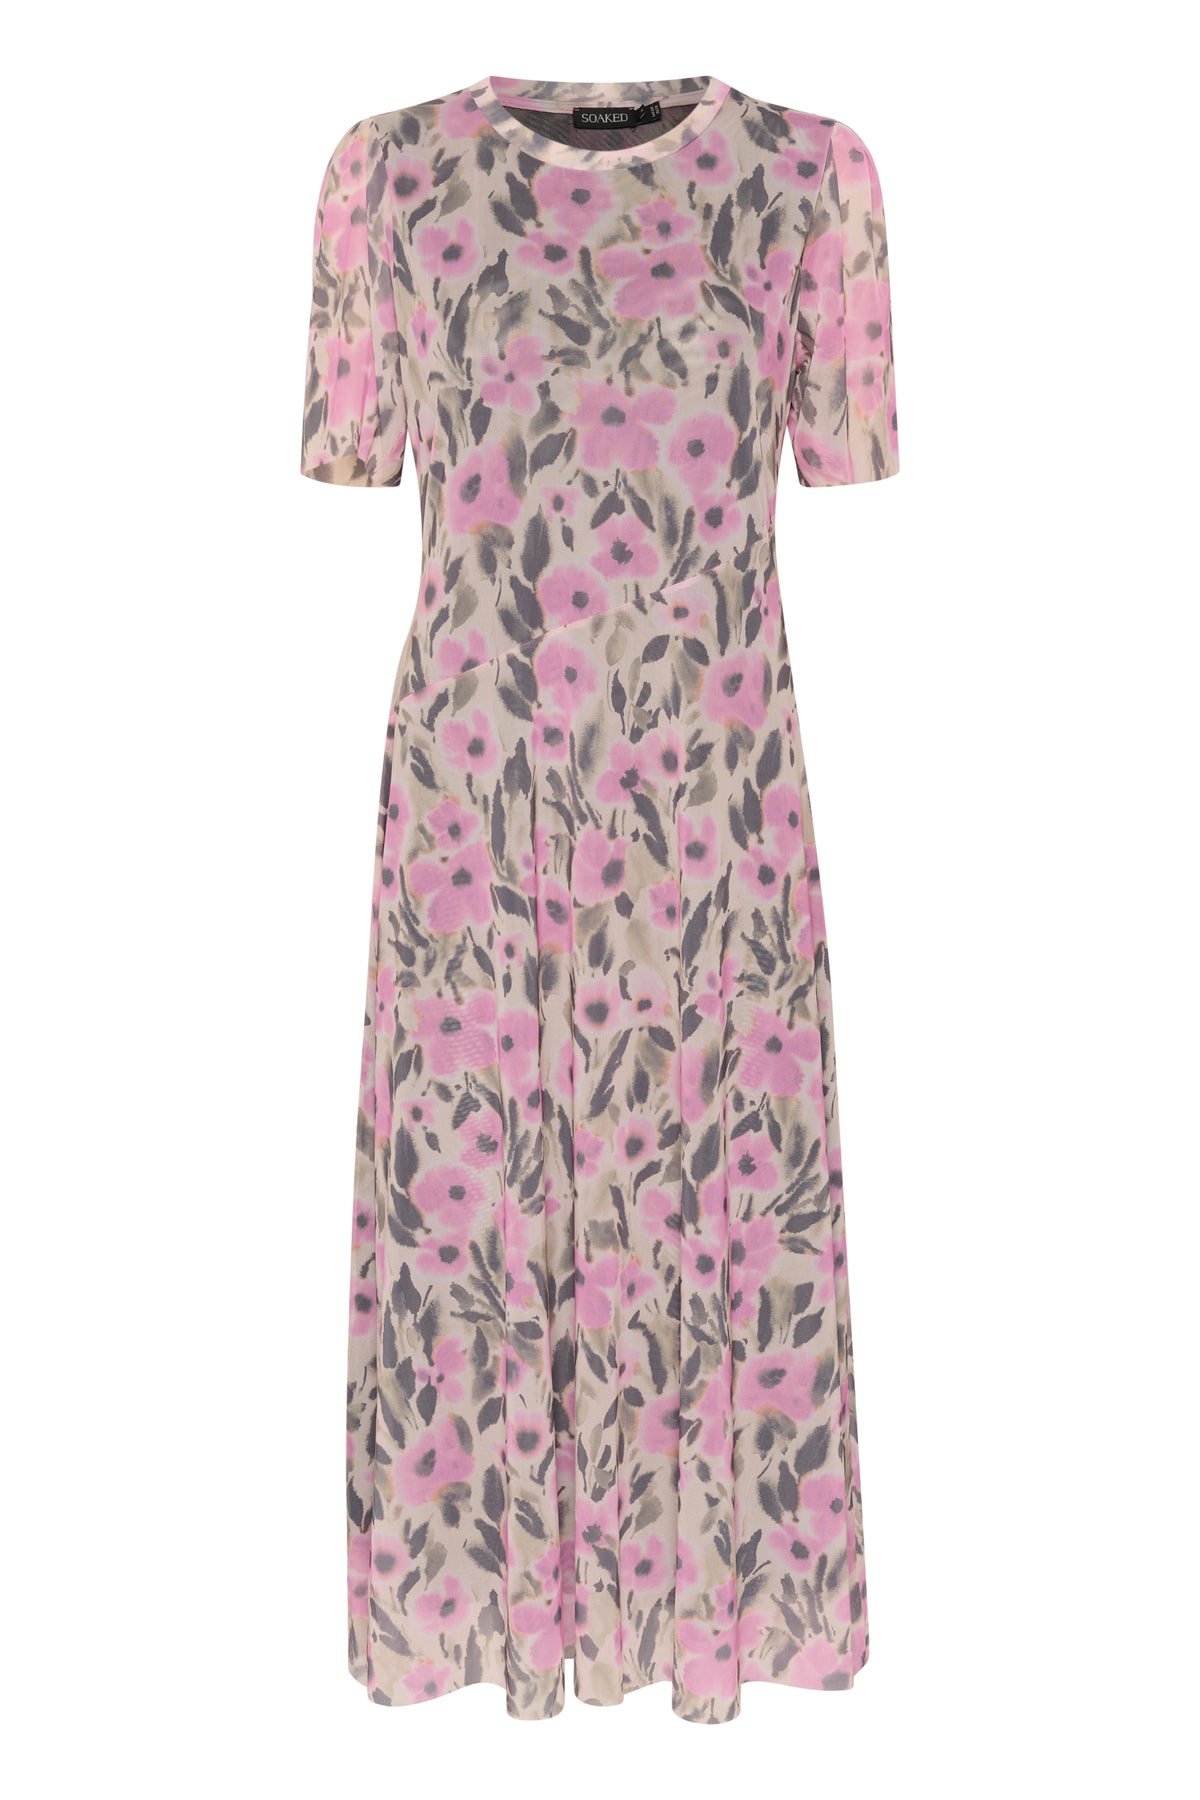 Soaked in Luxury SLAnaika Pastel Lavender Flower Print Mesh Dress, 30407300